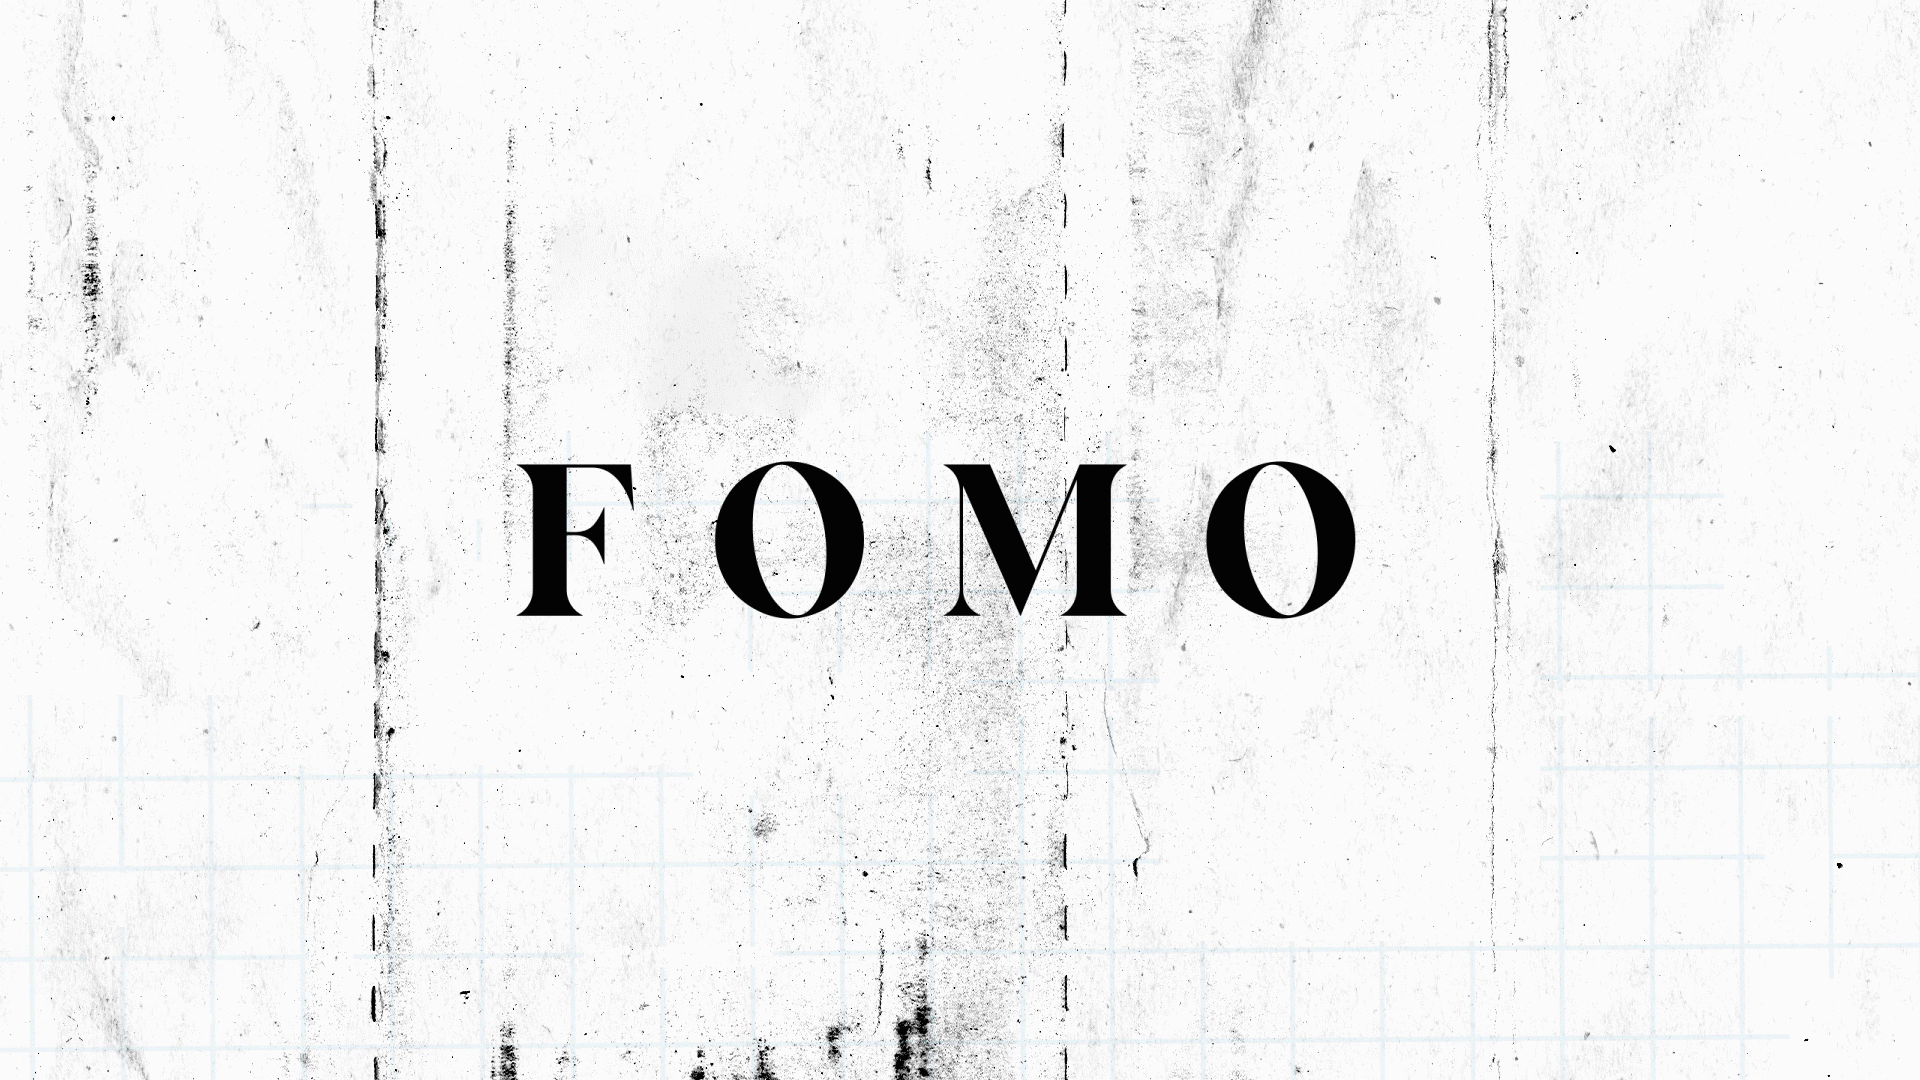 Gif of “FOMO” becoming “JOMO?”